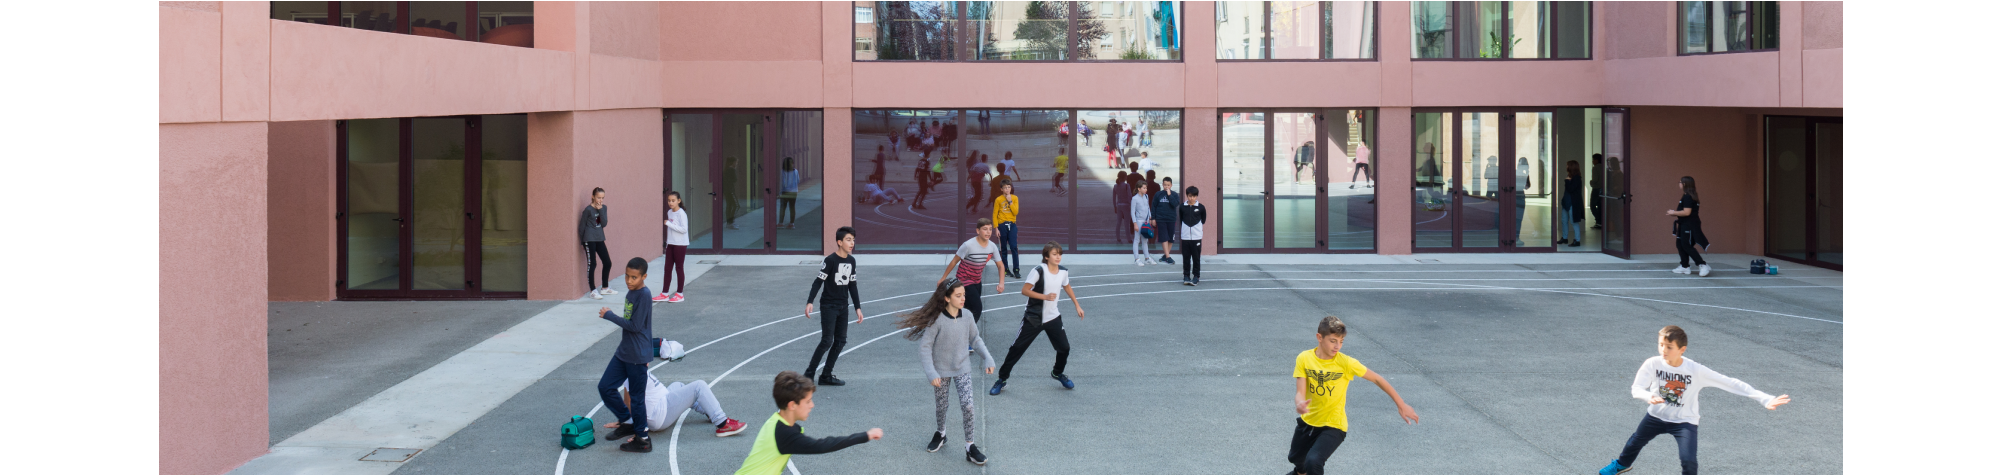 The new “Fermi” school is awarded in Barcelona